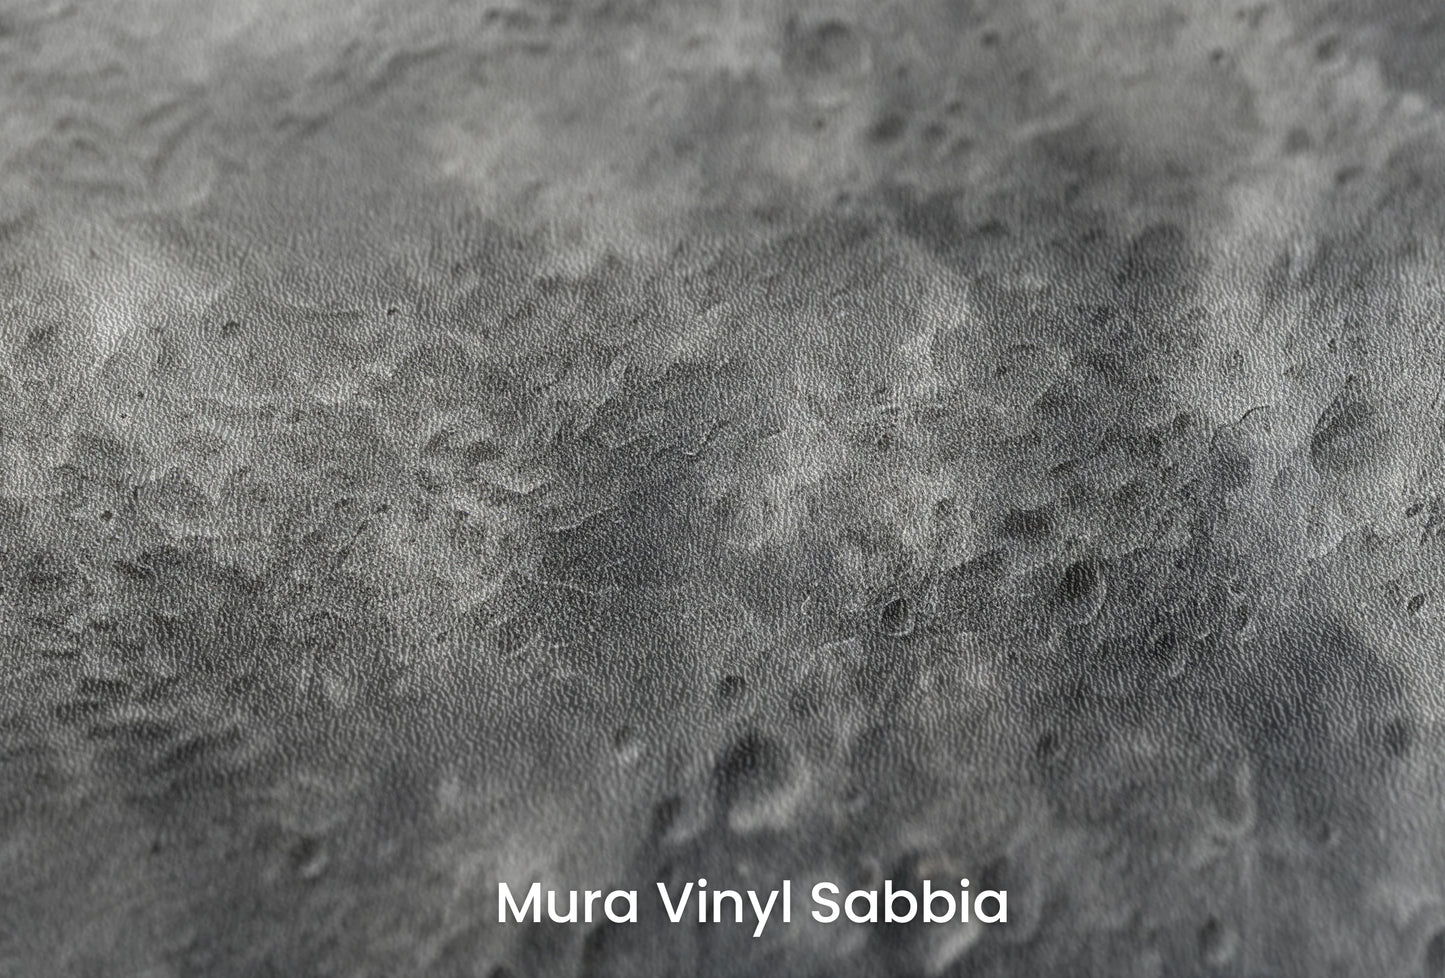 Zbliżenie na artystyczną fototapetę o nazwie Mercury's Texture na podłożu Mura Vinyl Sabbia struktura grubego ziarna piasku.